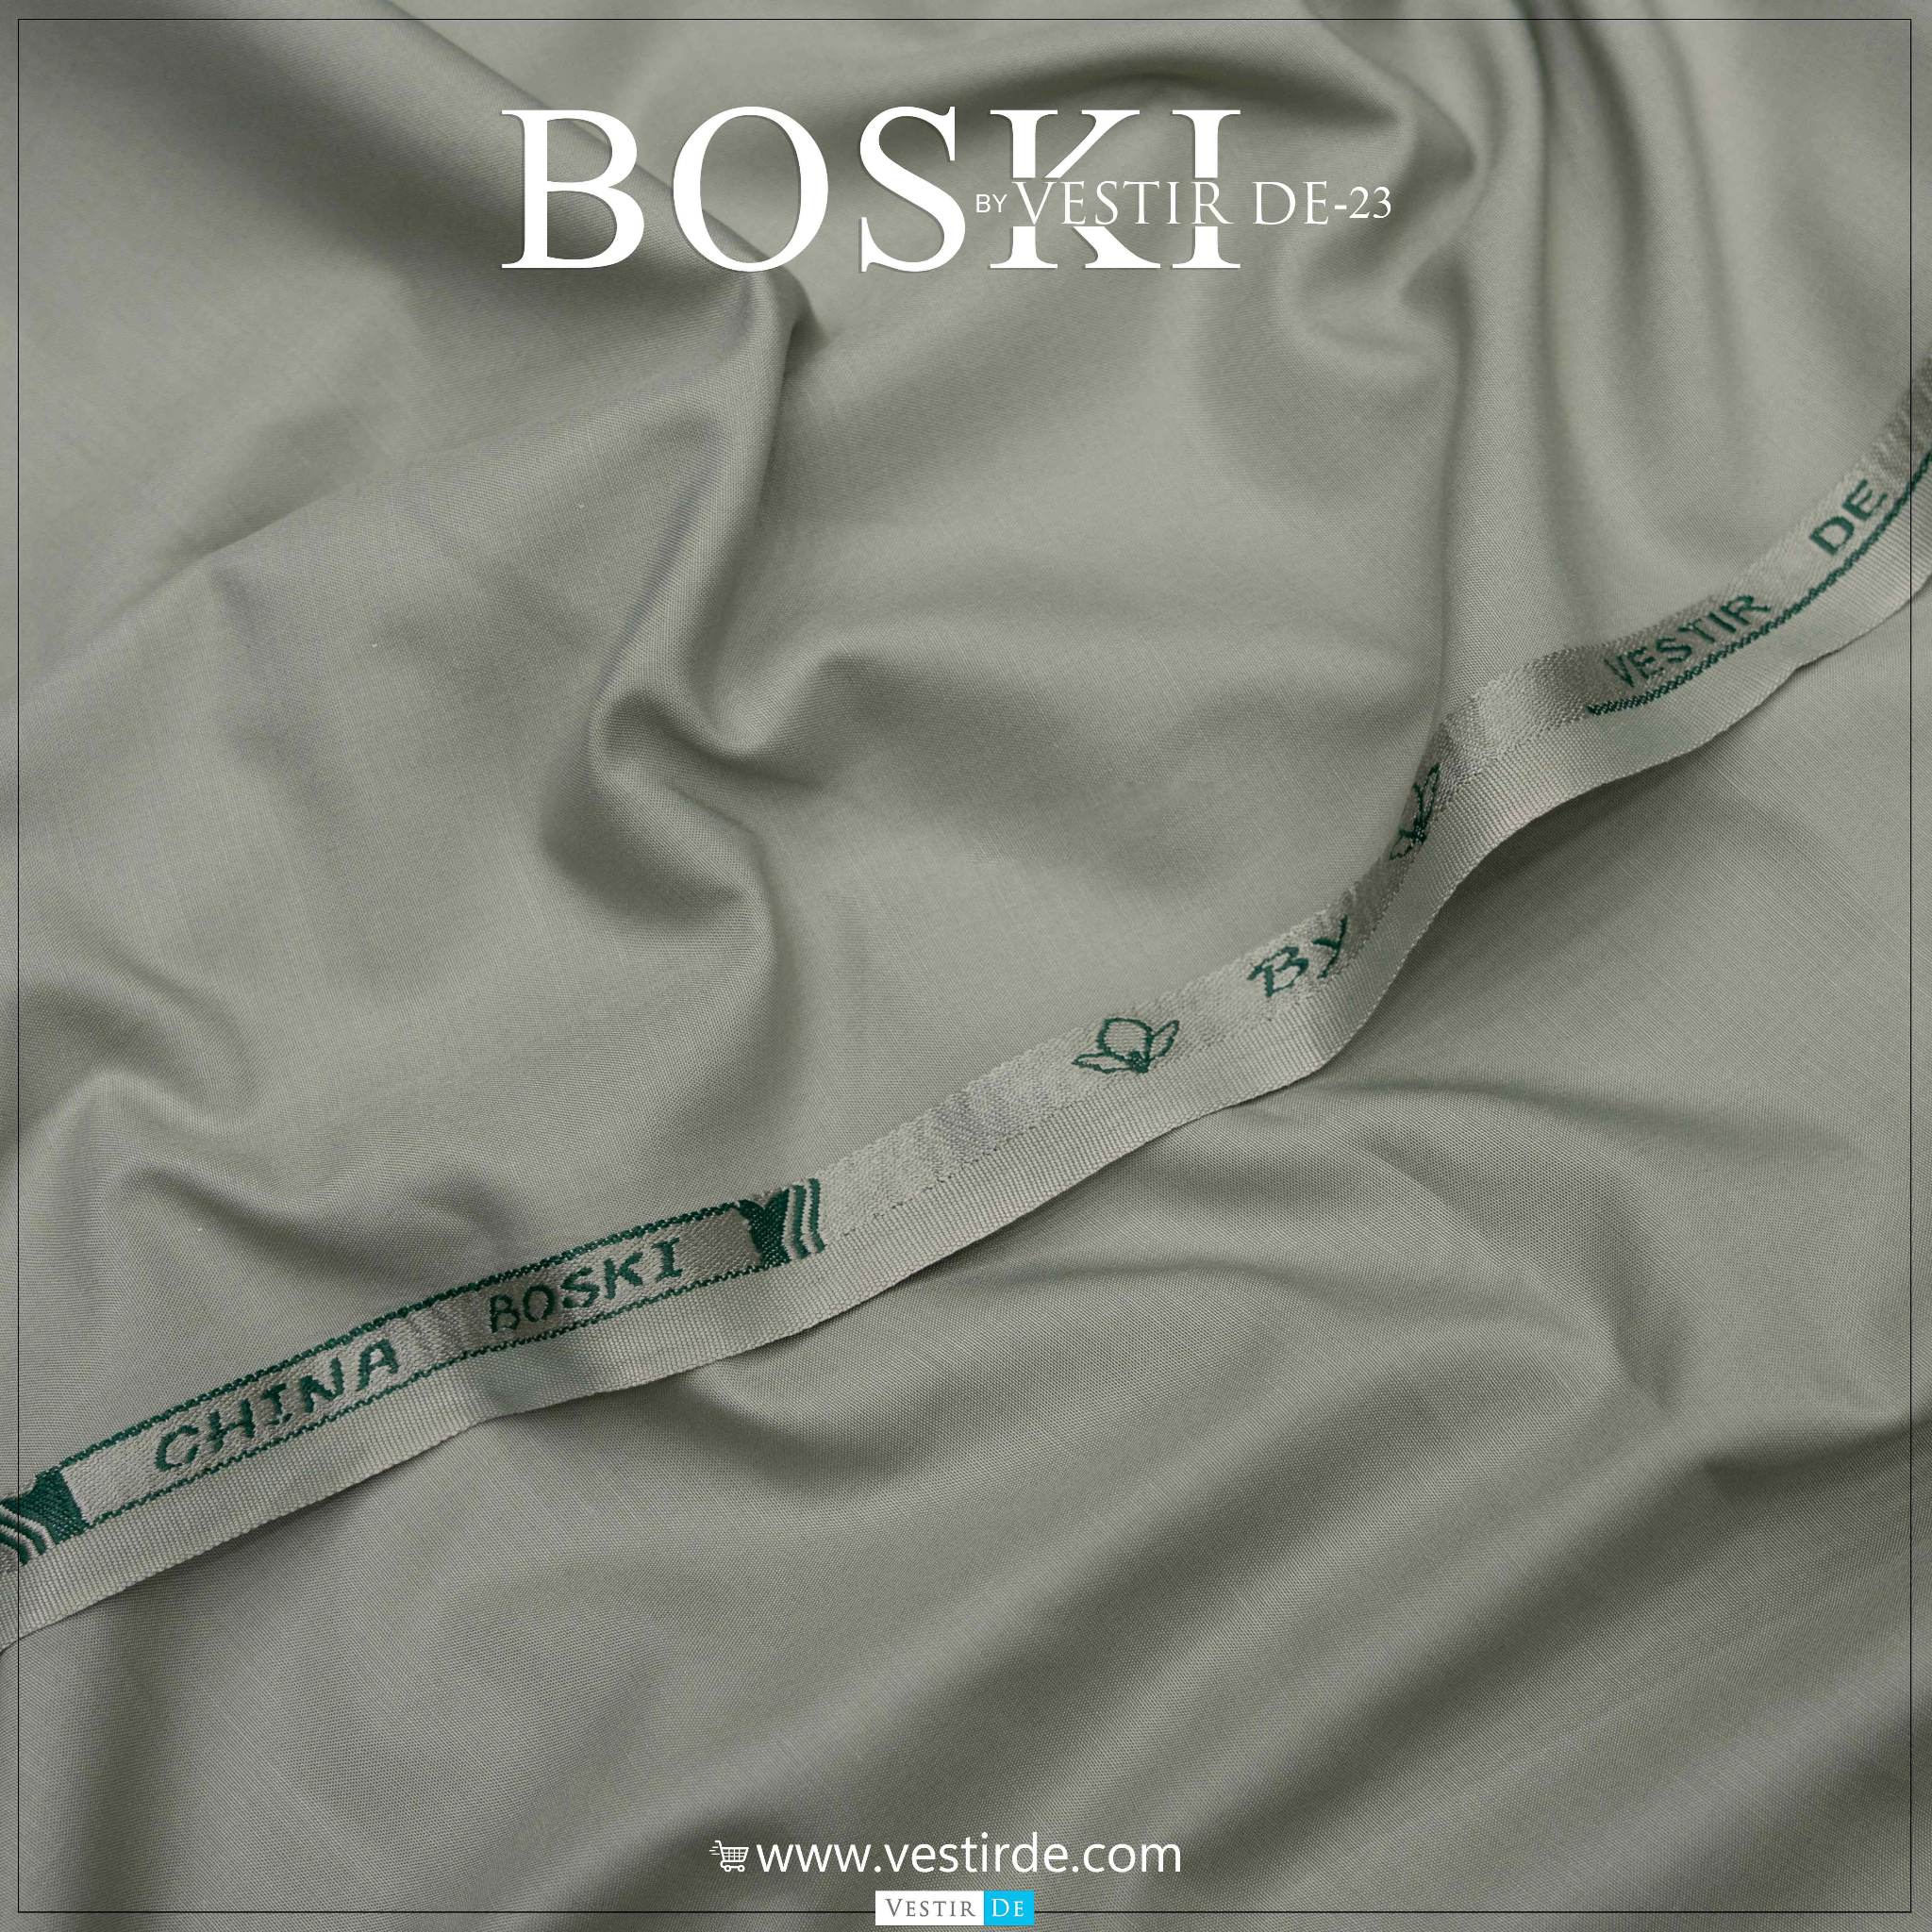 Boski By Vestir De 23